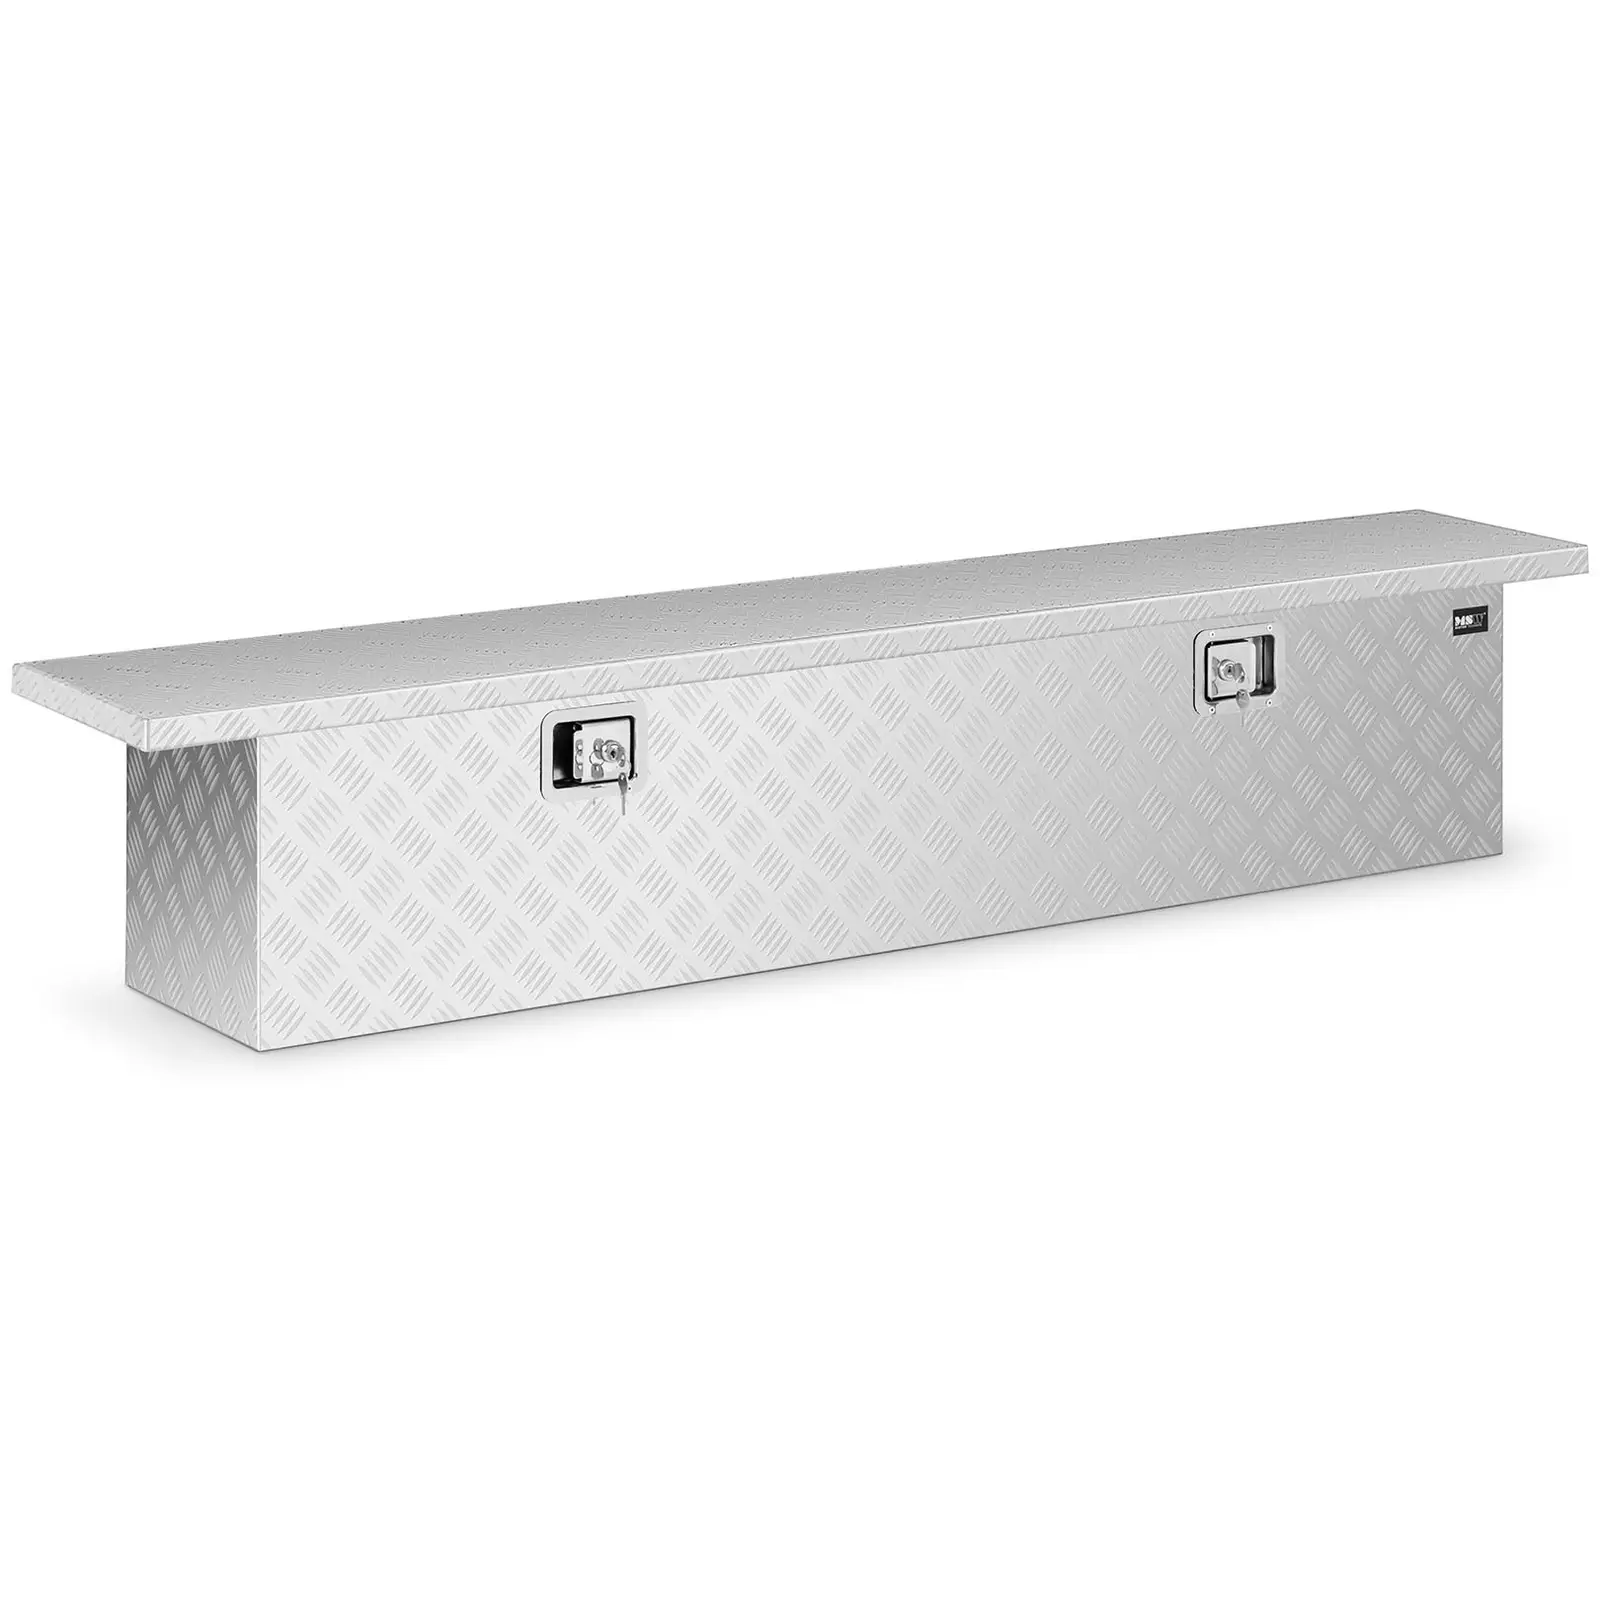 Caja de herramientas de aluminio - chapa corrugada - 175 x 30 x 35 cm - 180 L - con cerradura